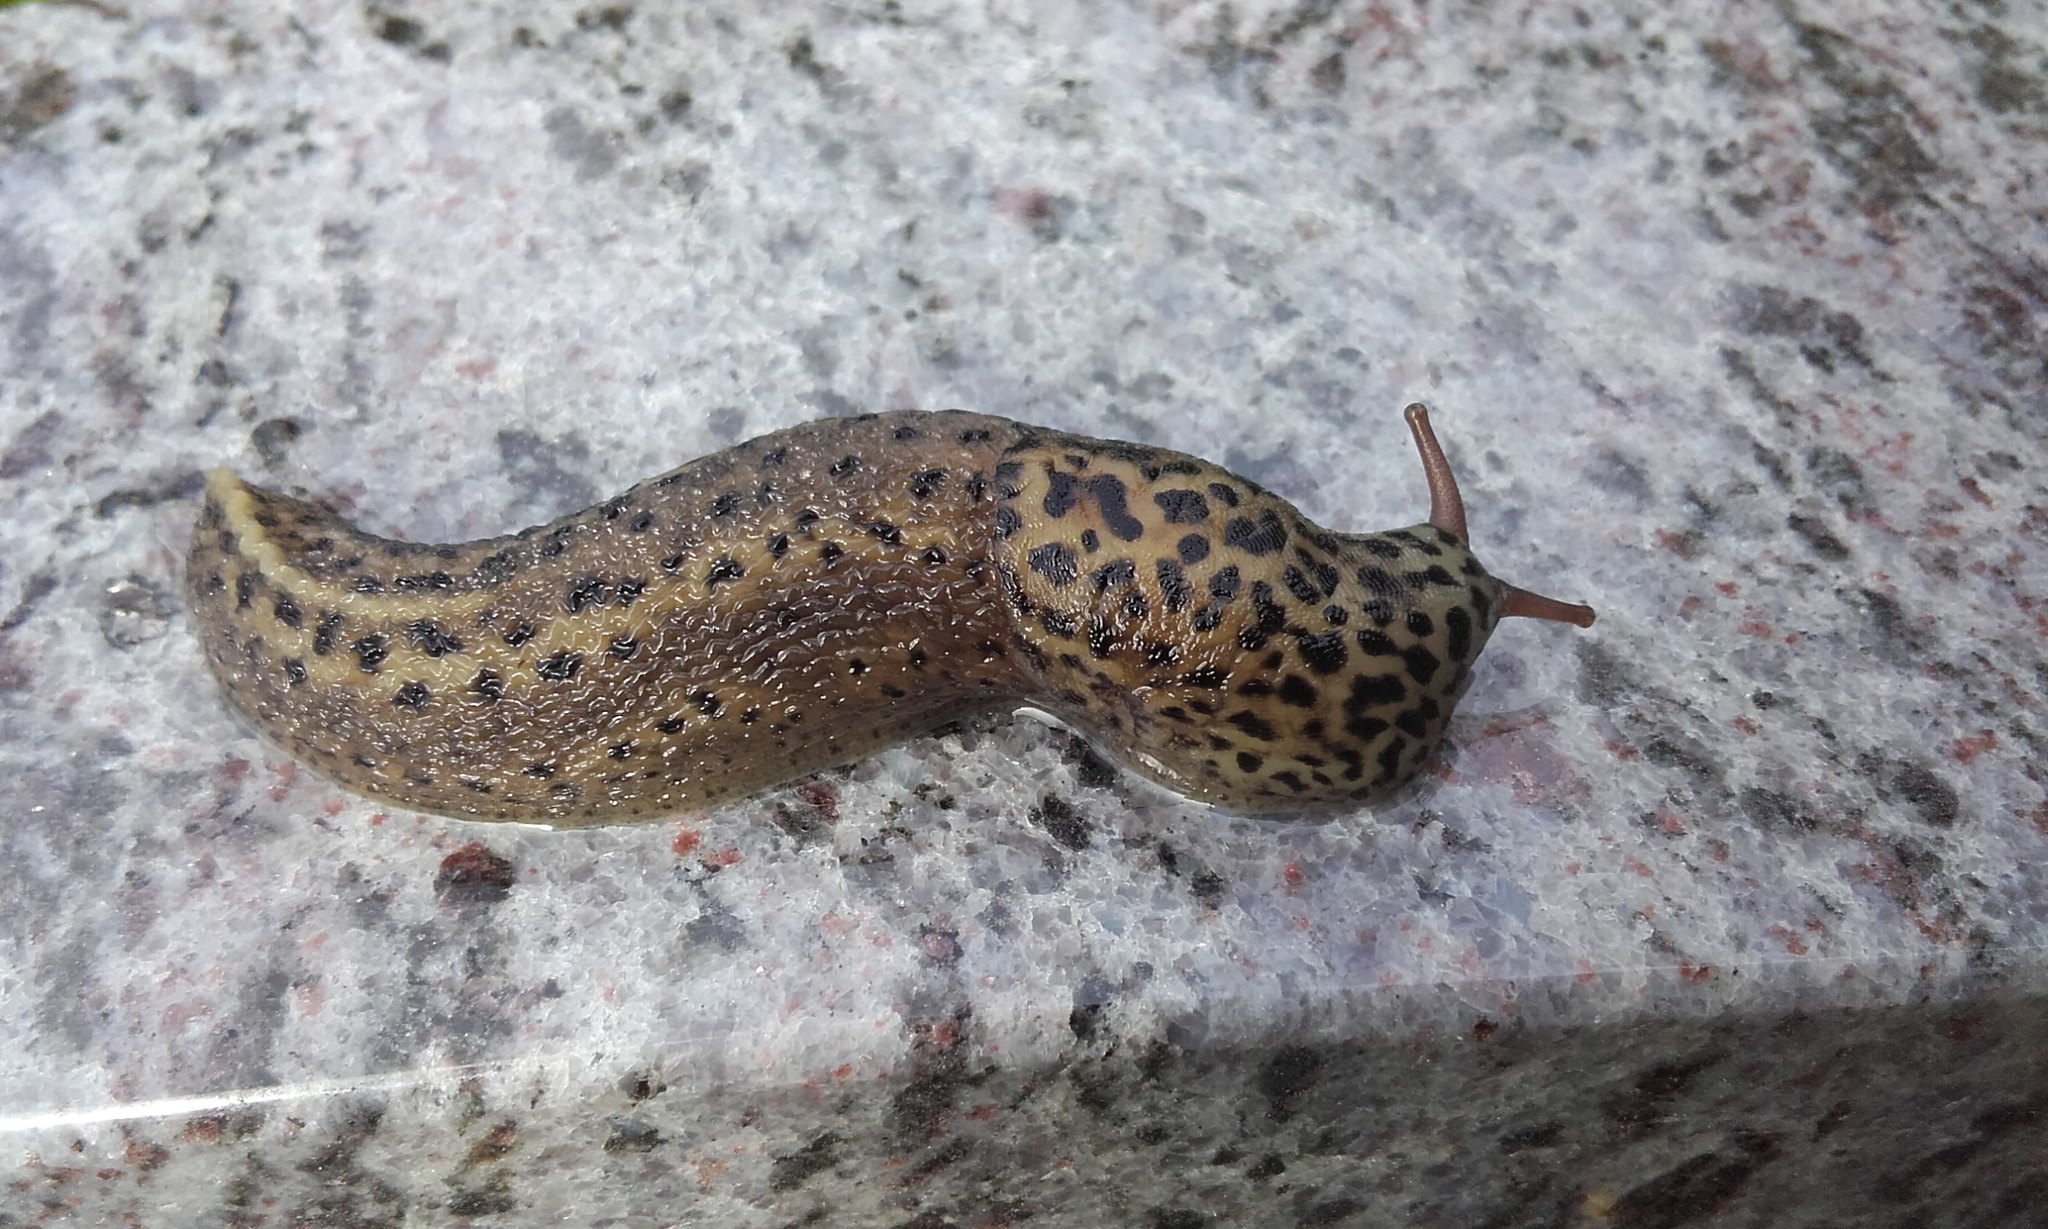 Leopard slug on a marble stone.